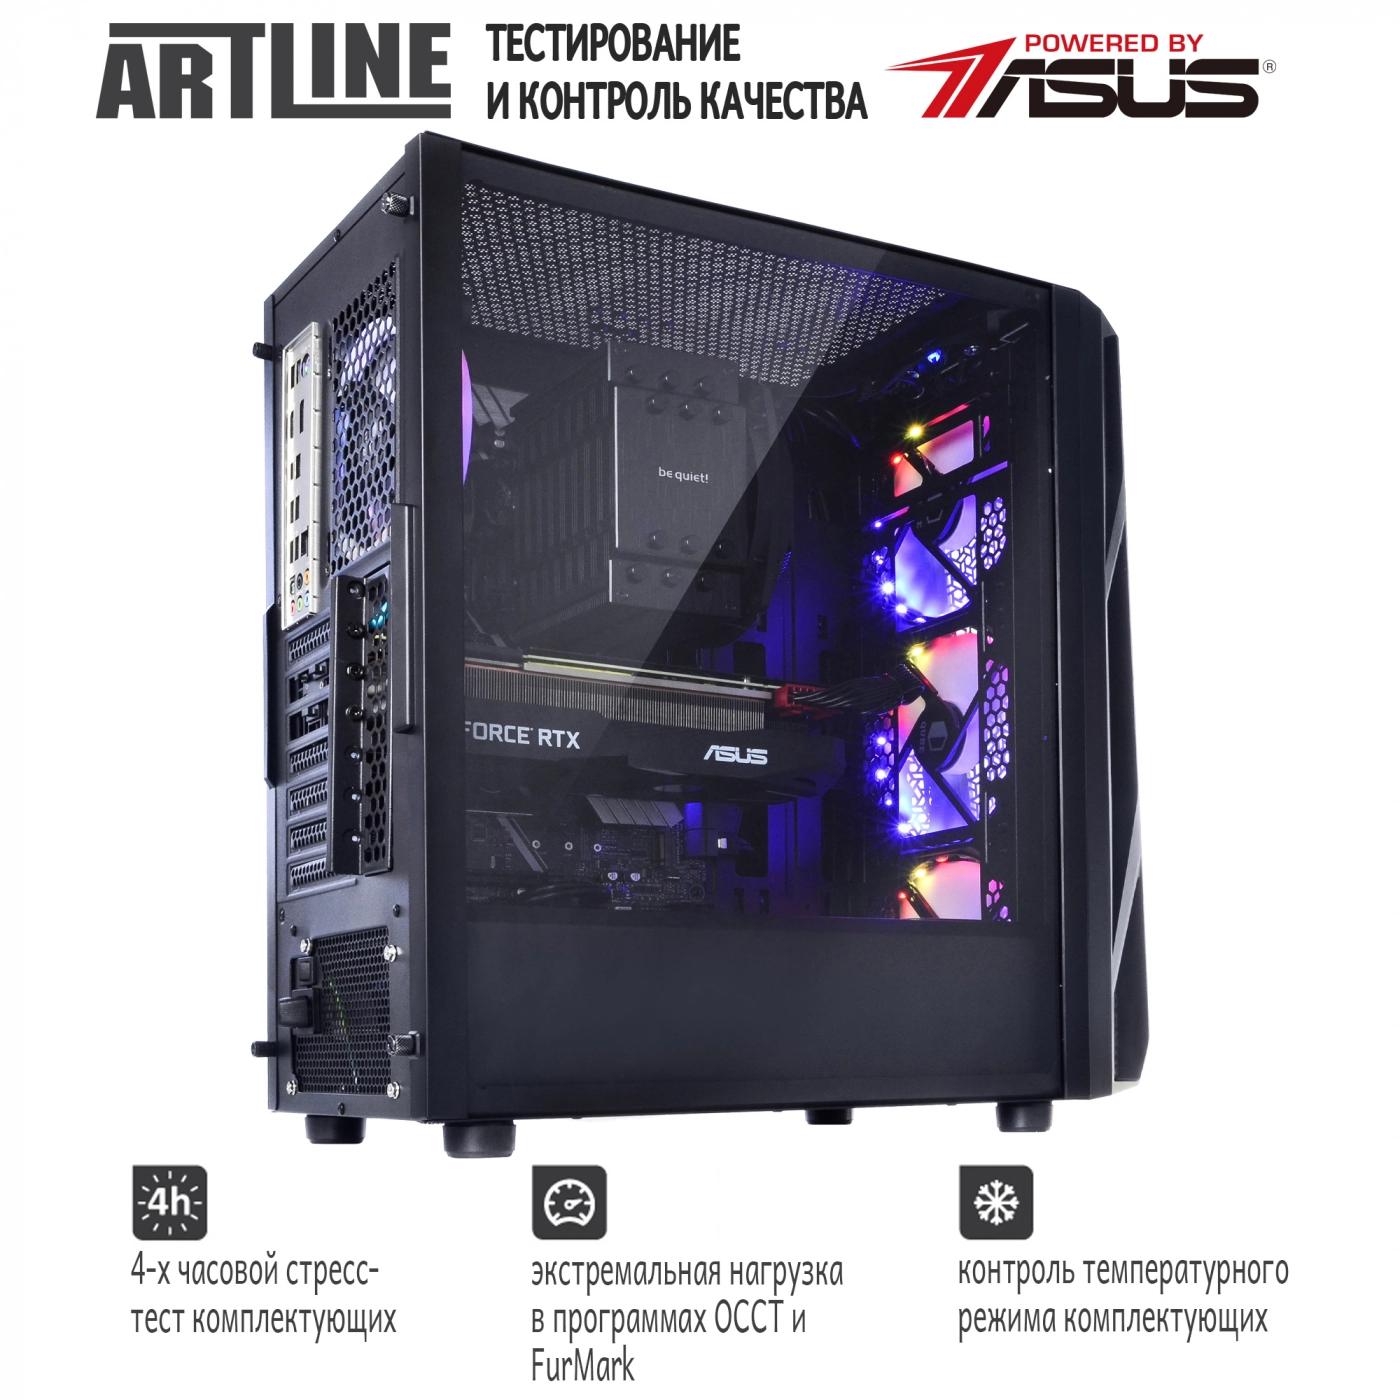 Купить Компьютер ARTLINE Gaming X93v30 - фото 10